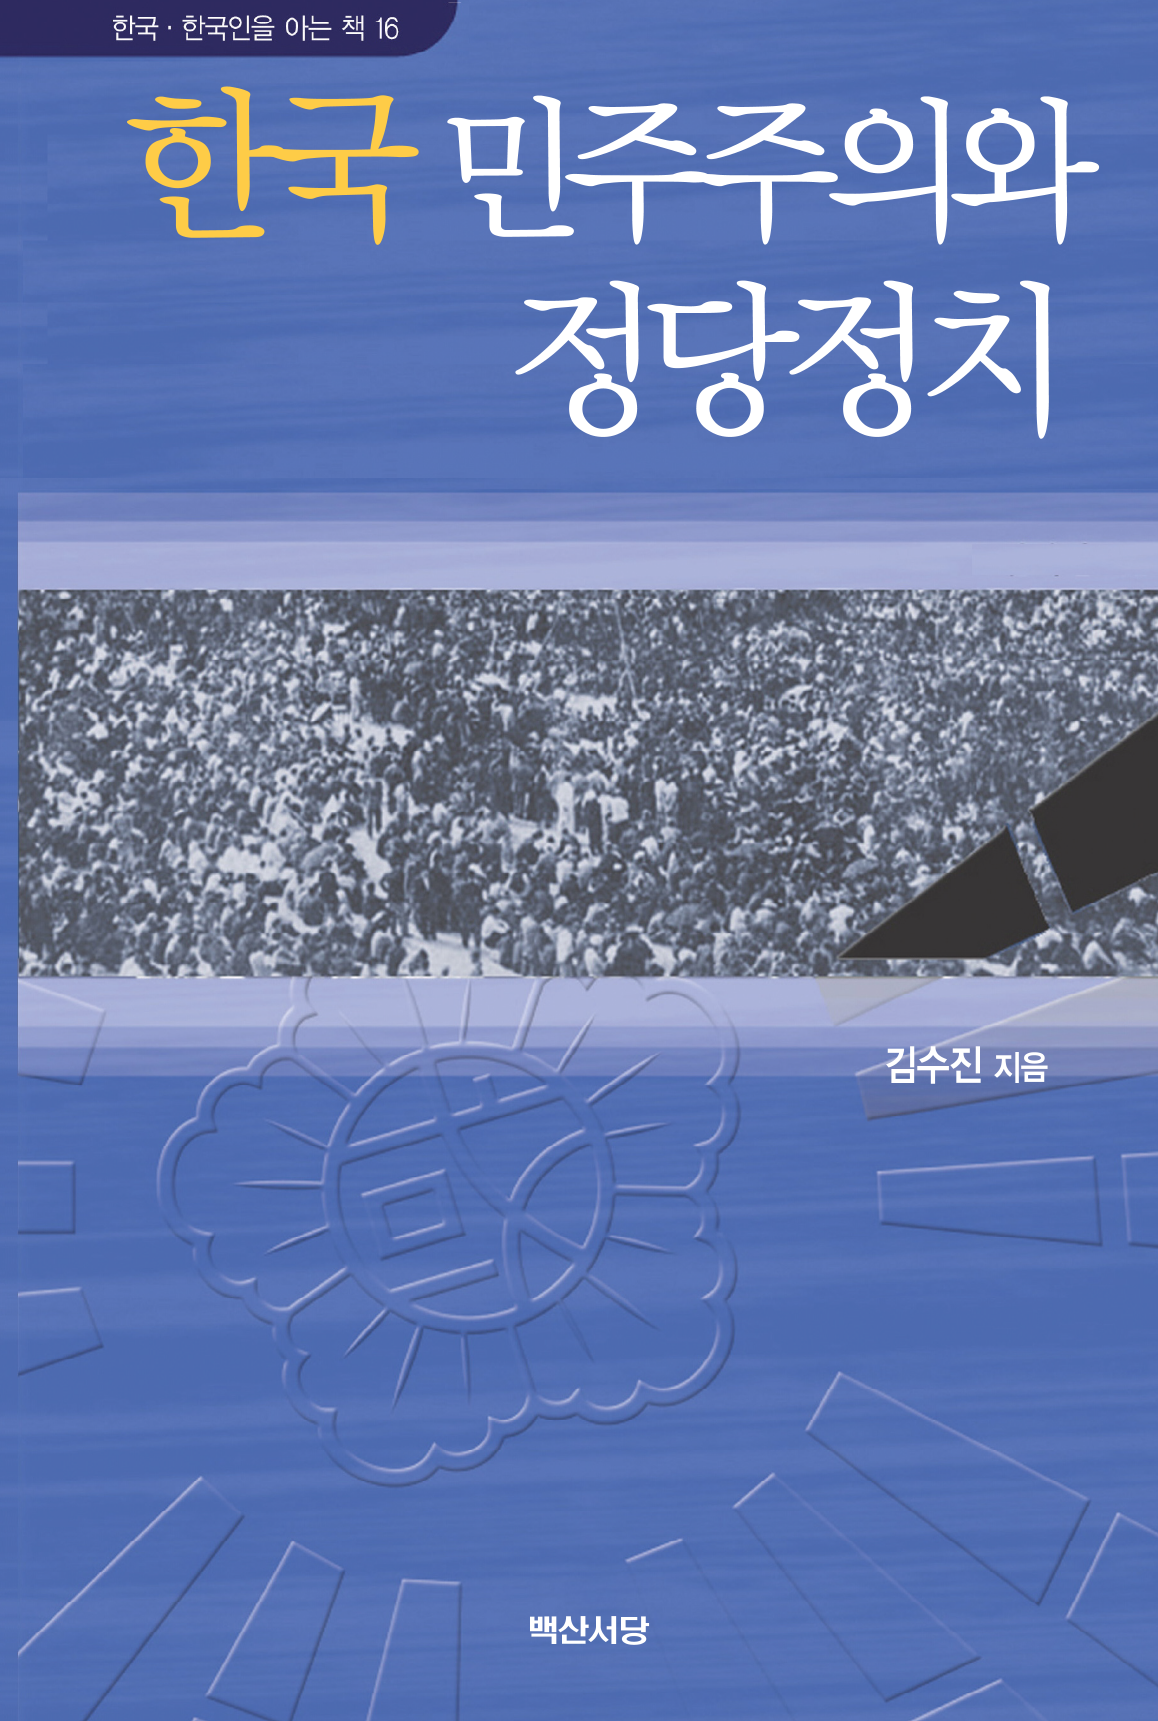 한국 민주주의와 정당정치